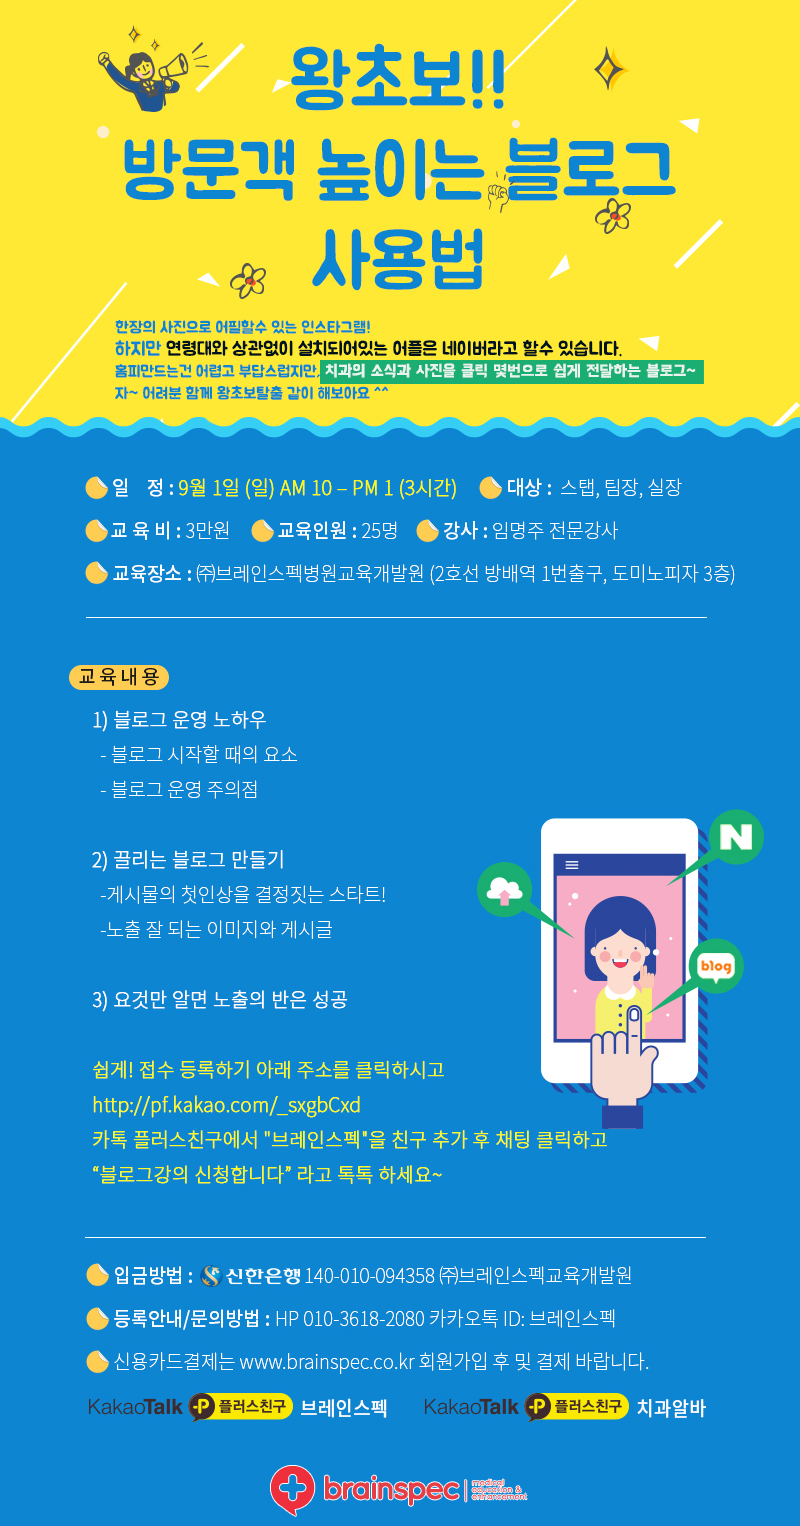 2019-9-1 방문객이 늘어나는 블로그 사용법_임명주 (2).jpg